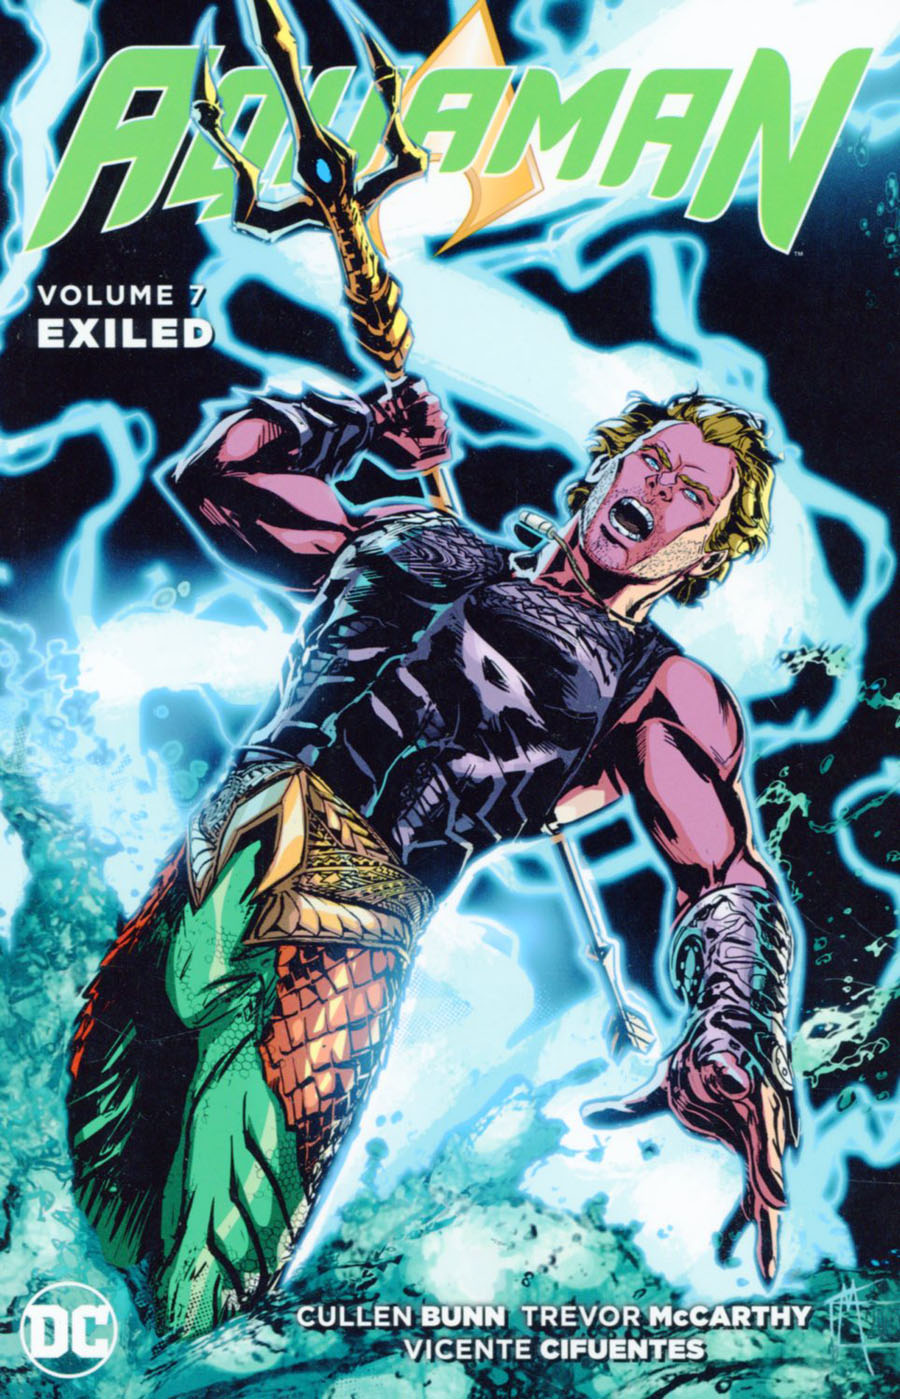 Aquaman (New 52) Vol 7 Exiled TP